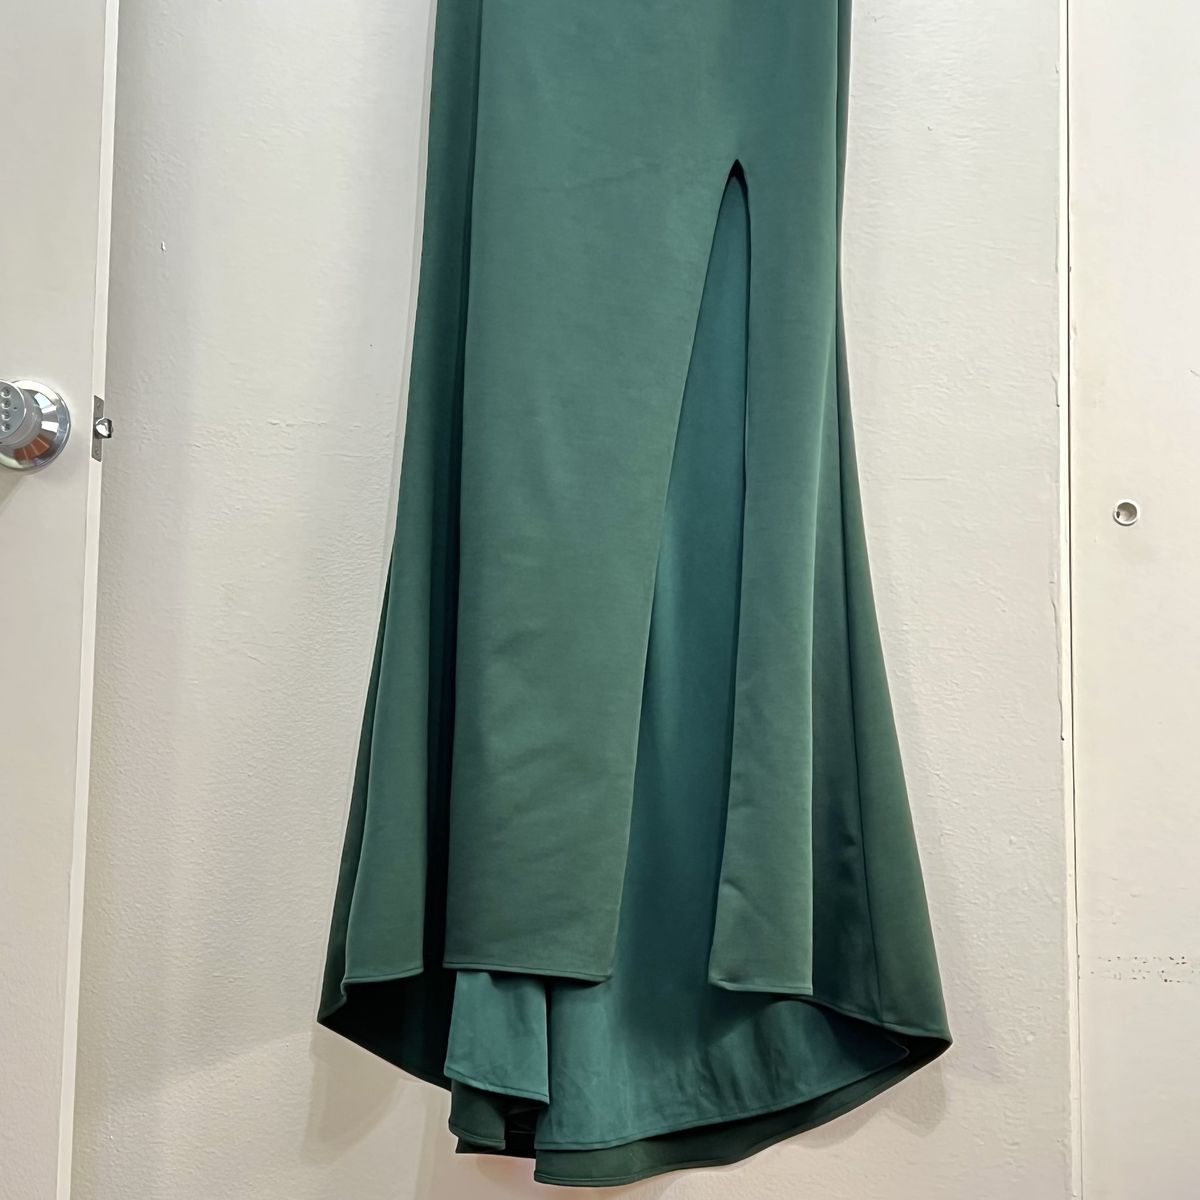 Style 28176 La Femme Size 8 One Shoulder Emerald Green Side Slit Dress on Queenly